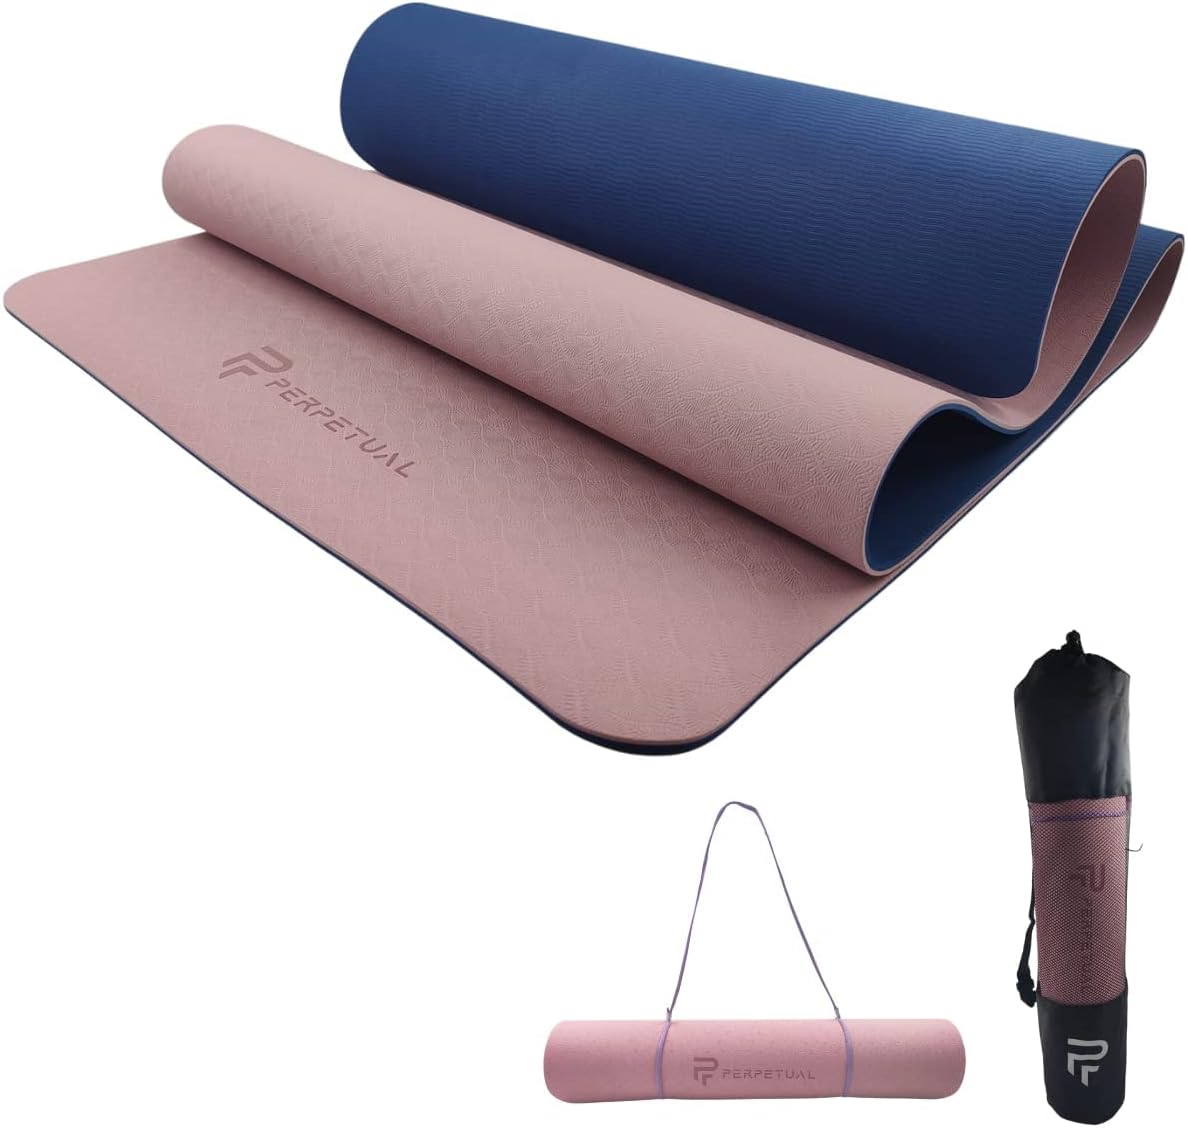 Esterilla Perpetual De Yoga Y Pilates Antideslizante De 6mm Con Correa Y Bolsa De Transporte - azul-marino-rosa - 